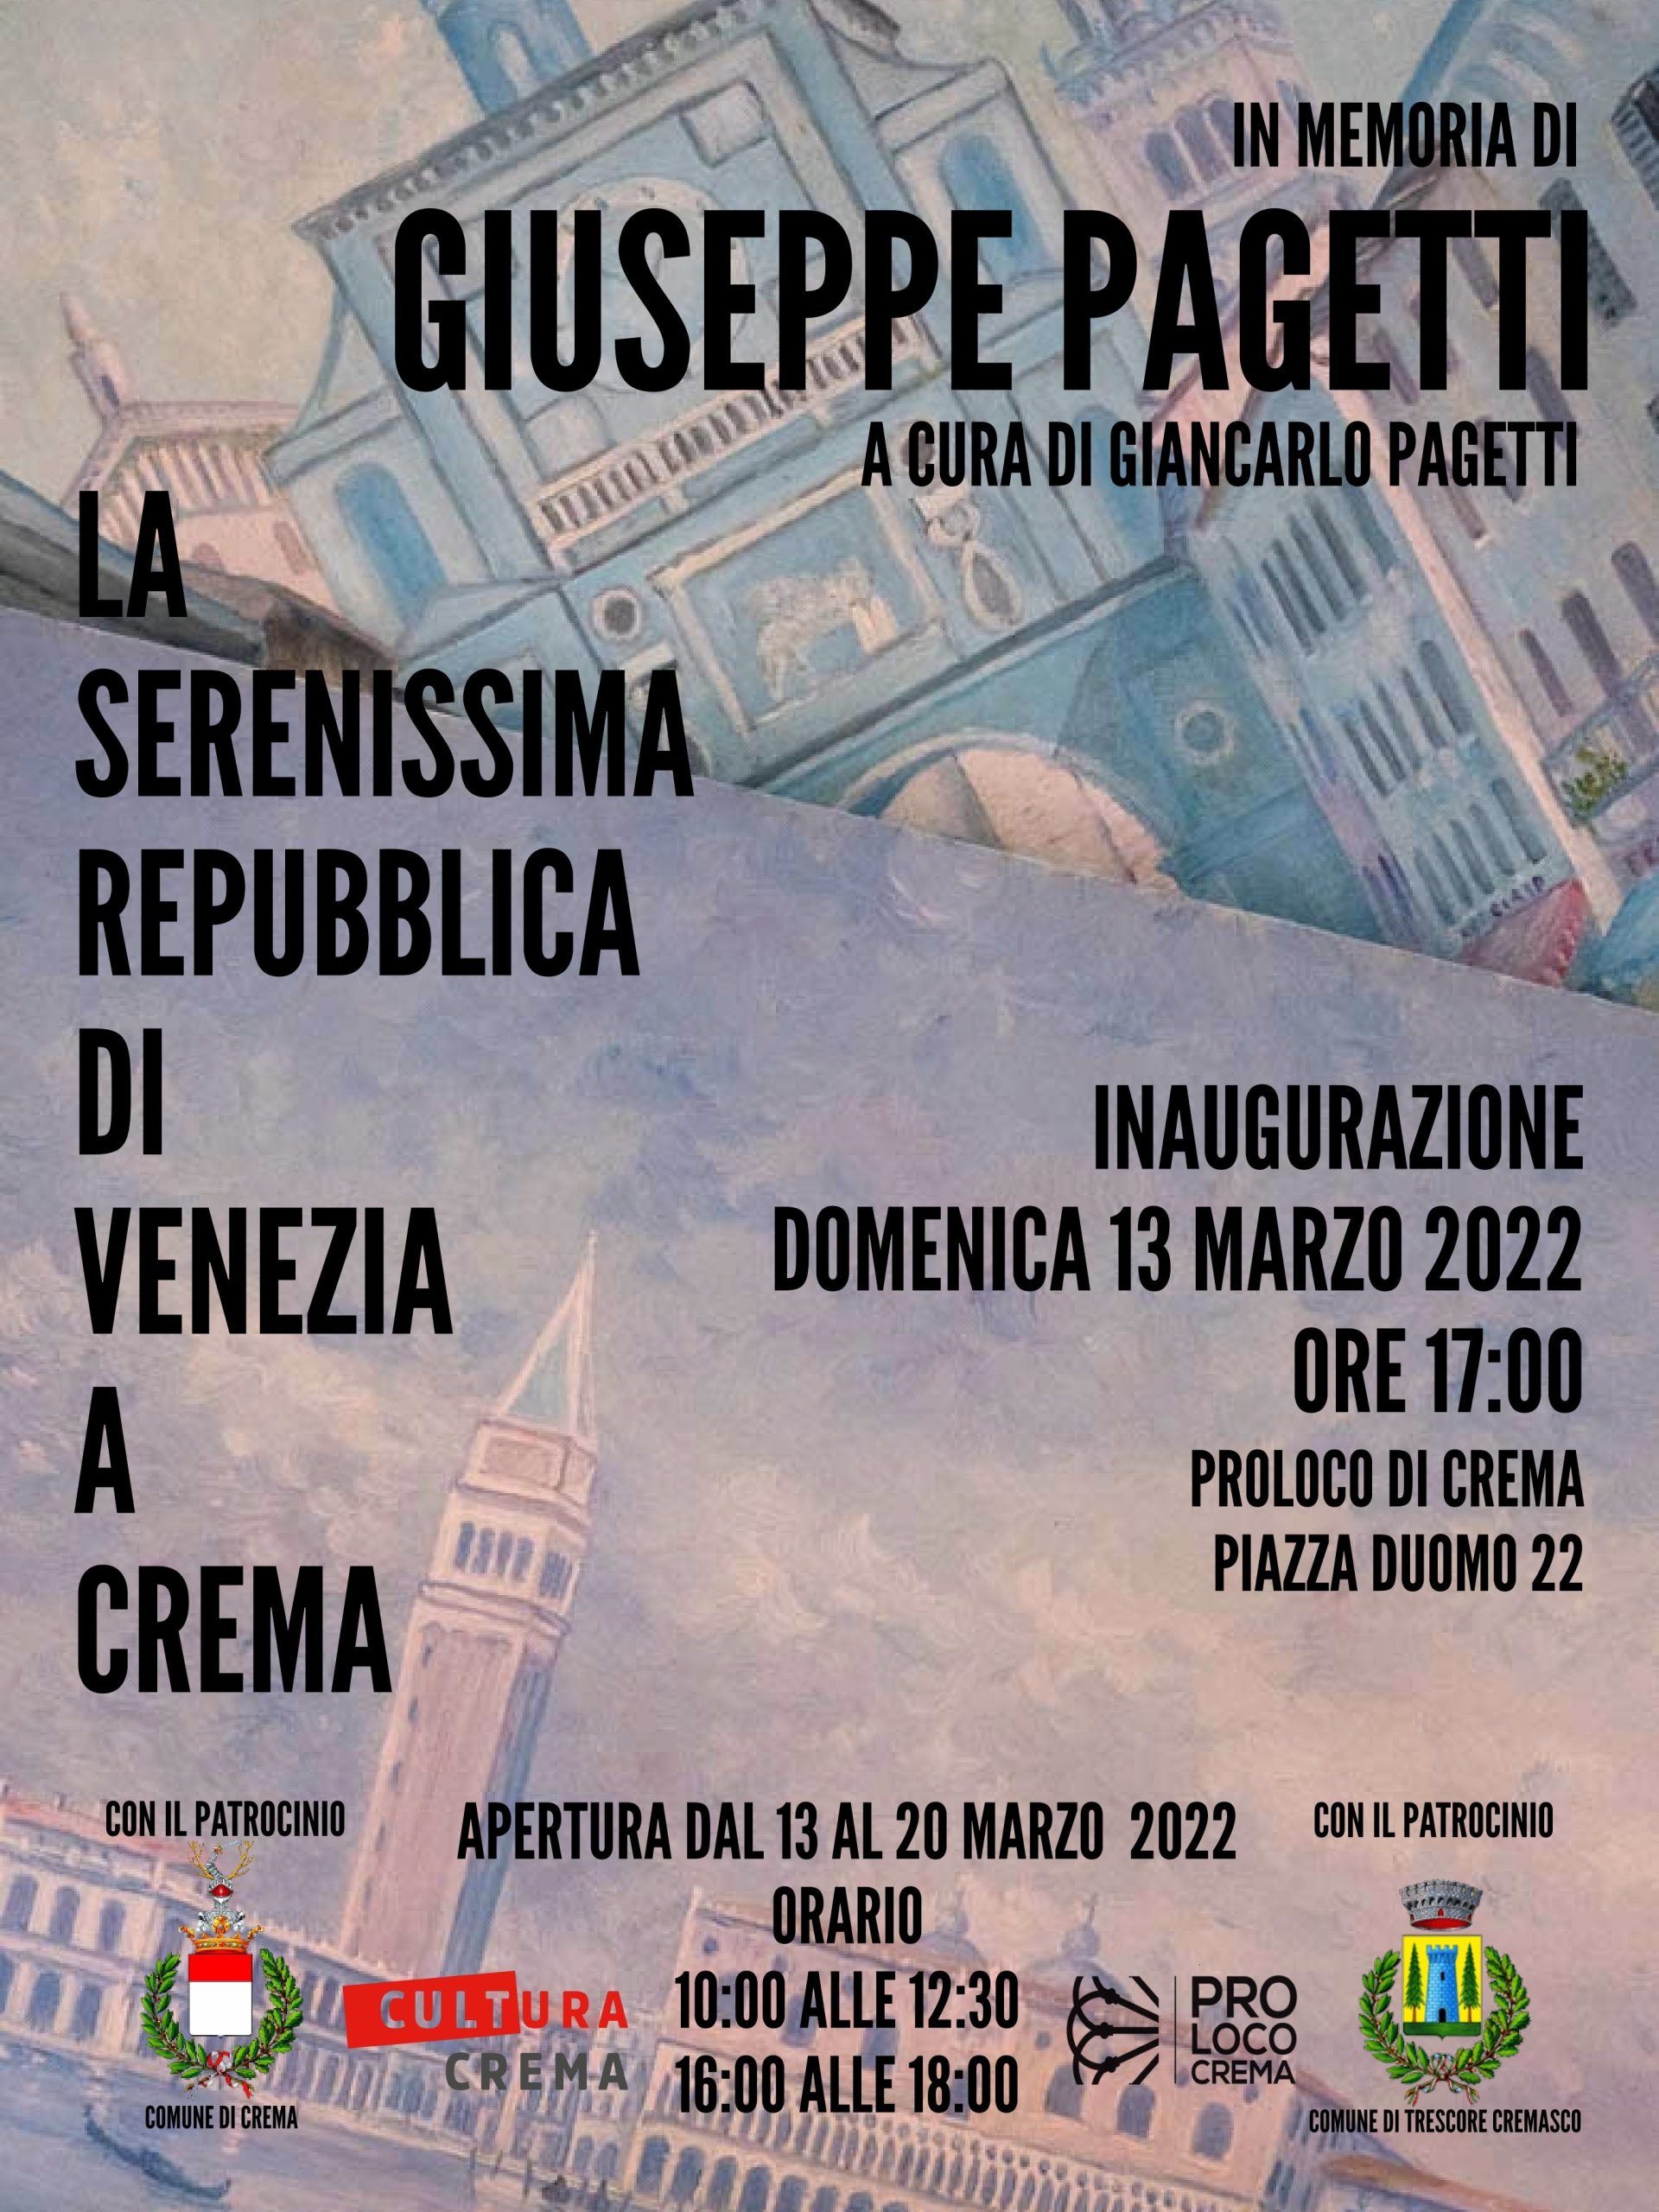 Pro Loco, inaugurazione mostra pittorica in memoria di Giuseppe Pagetti